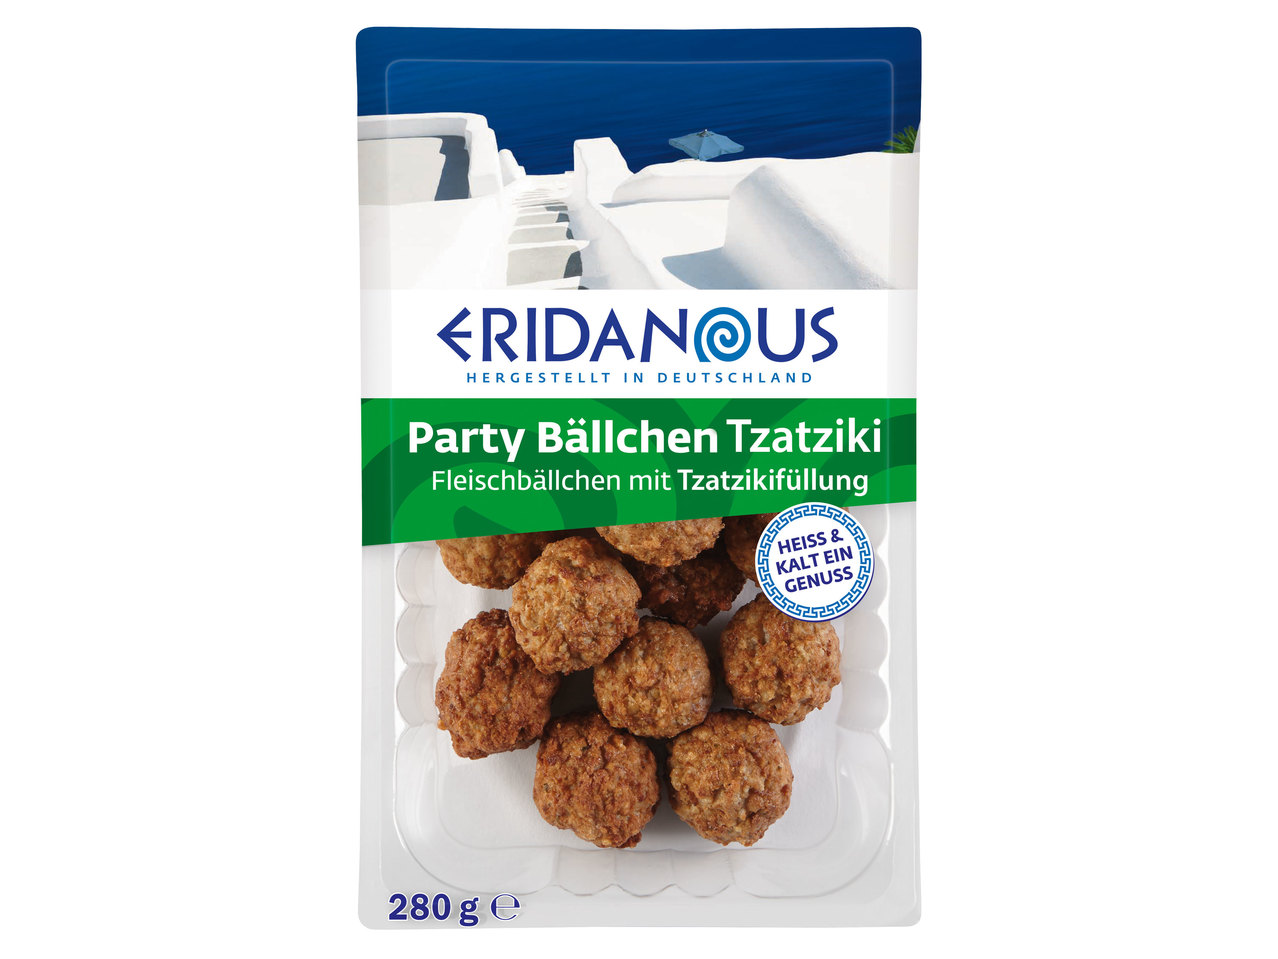 ERIDANOUS Party-Bällchen Tzatziki